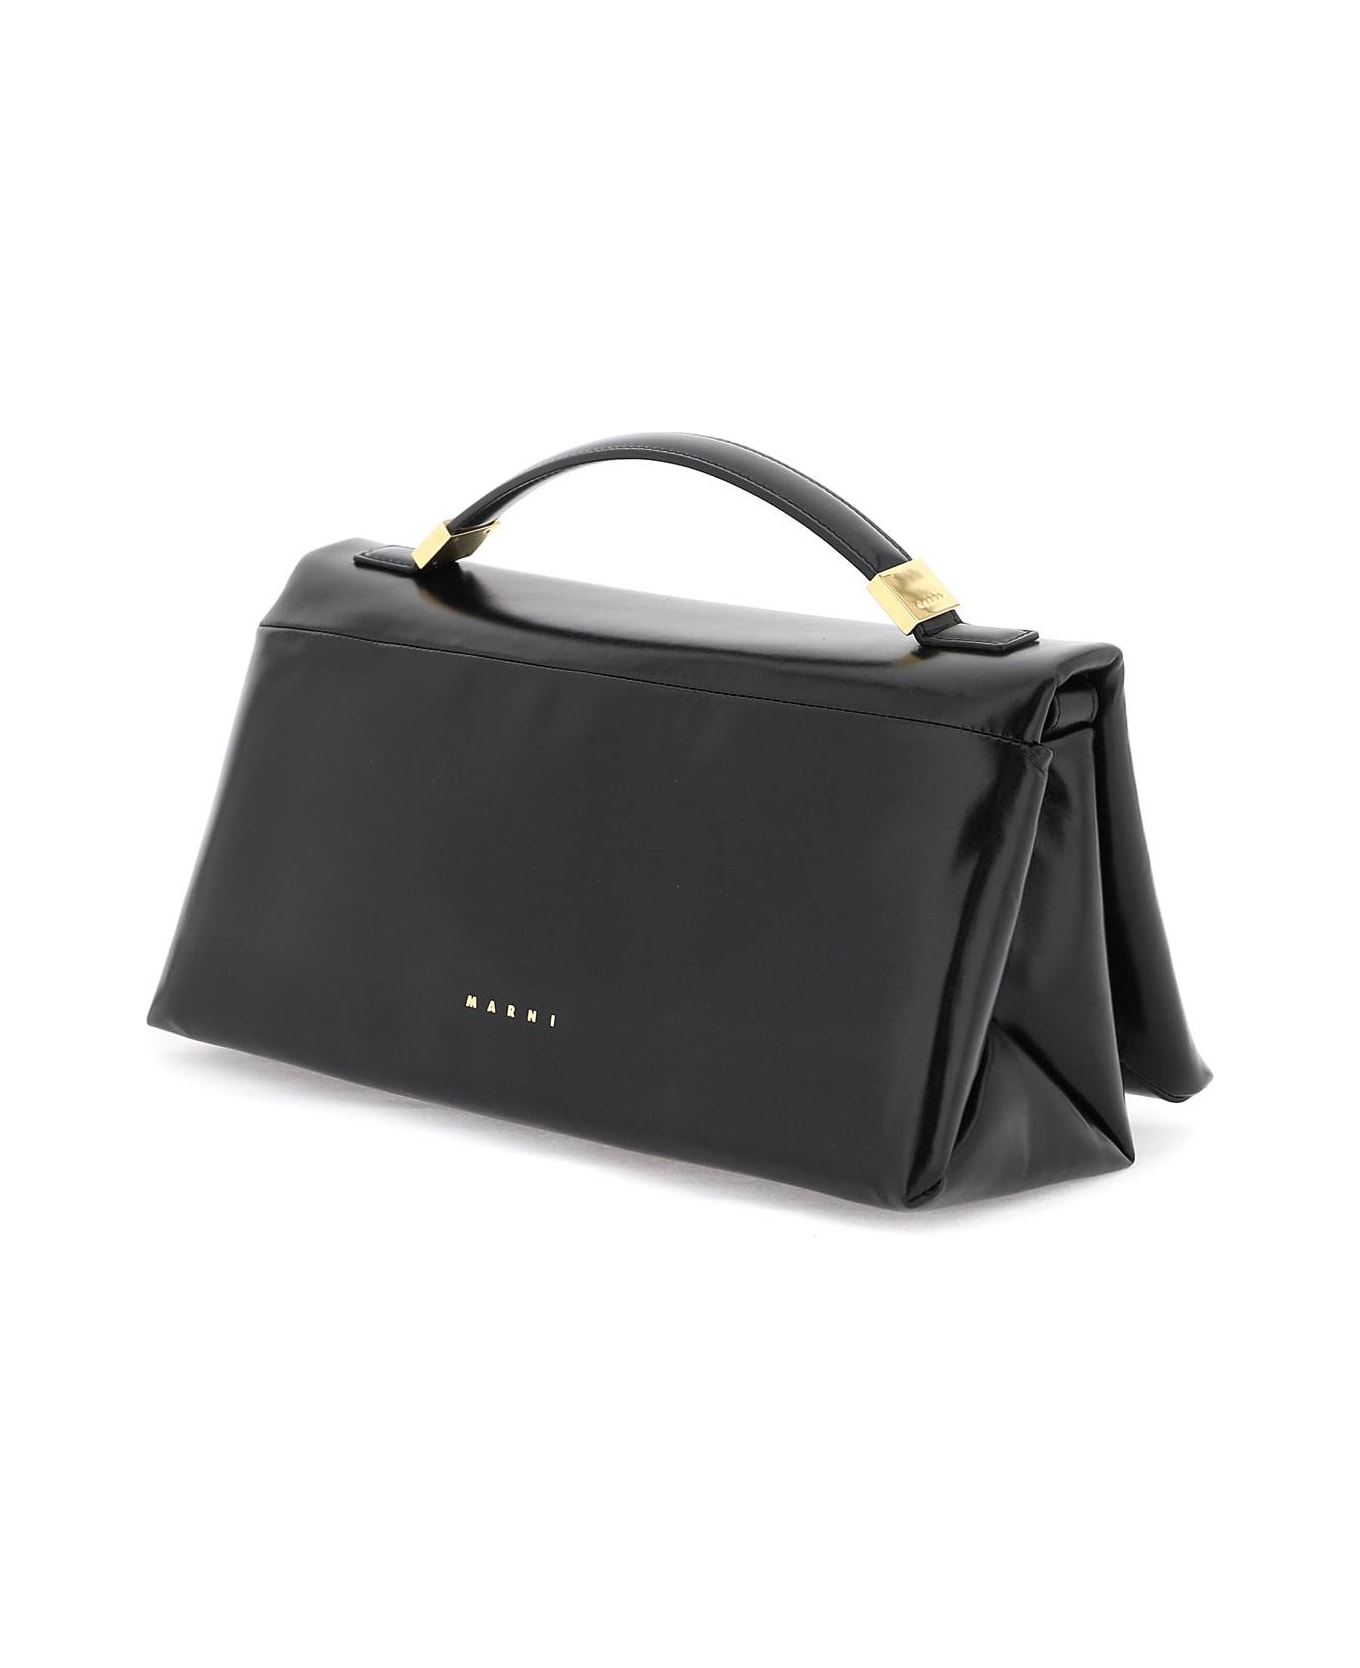 Marni 'prisma' Handbag - Black